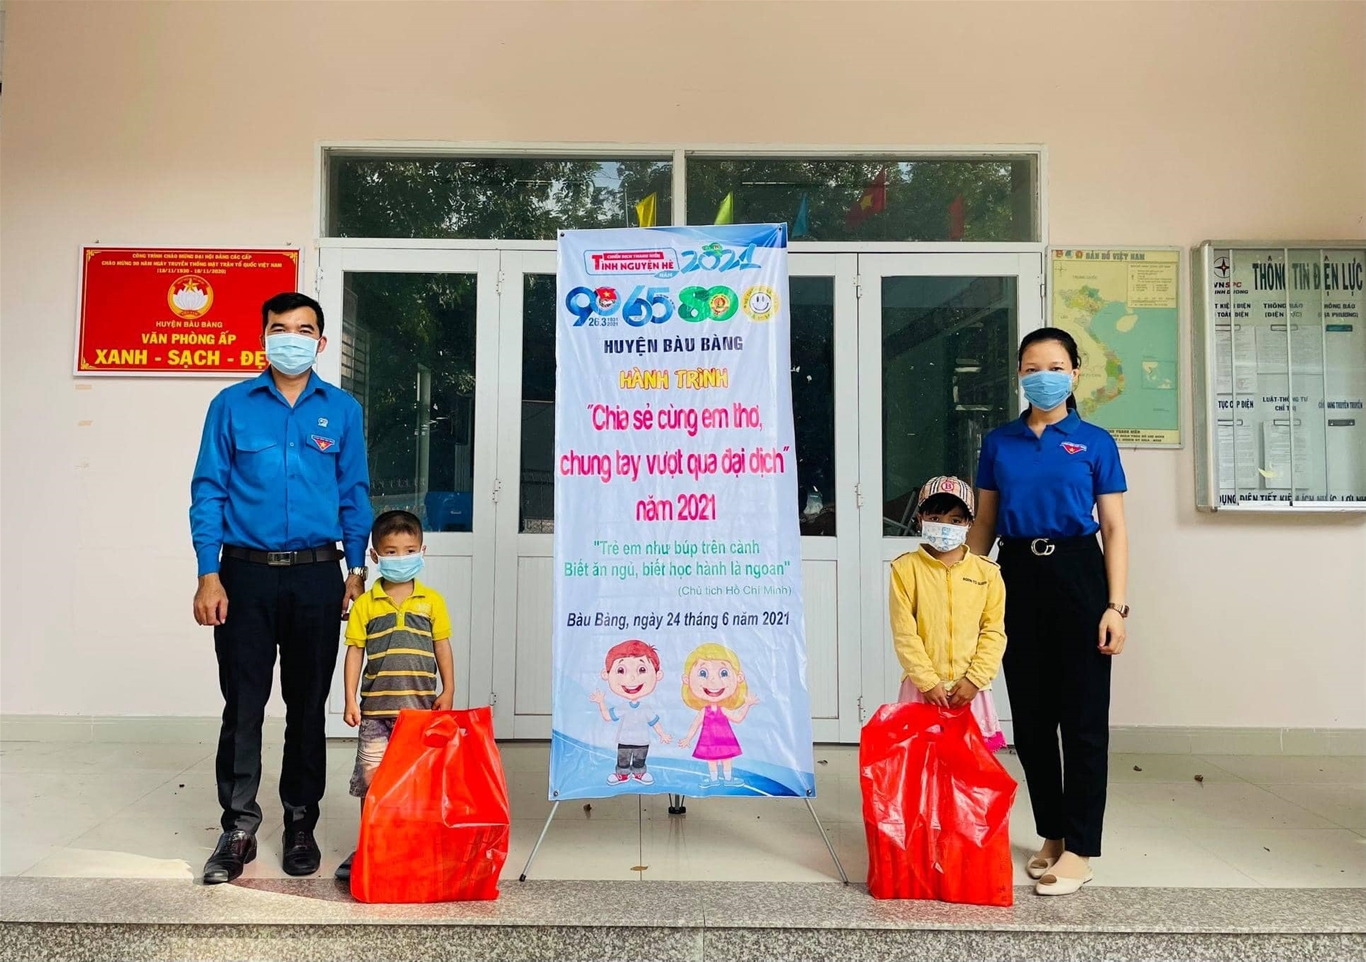 Hành trình "Chia sẻ cùng em thơ- chung tay vượt qua đại dịch" tại huyện Bàu Bàng